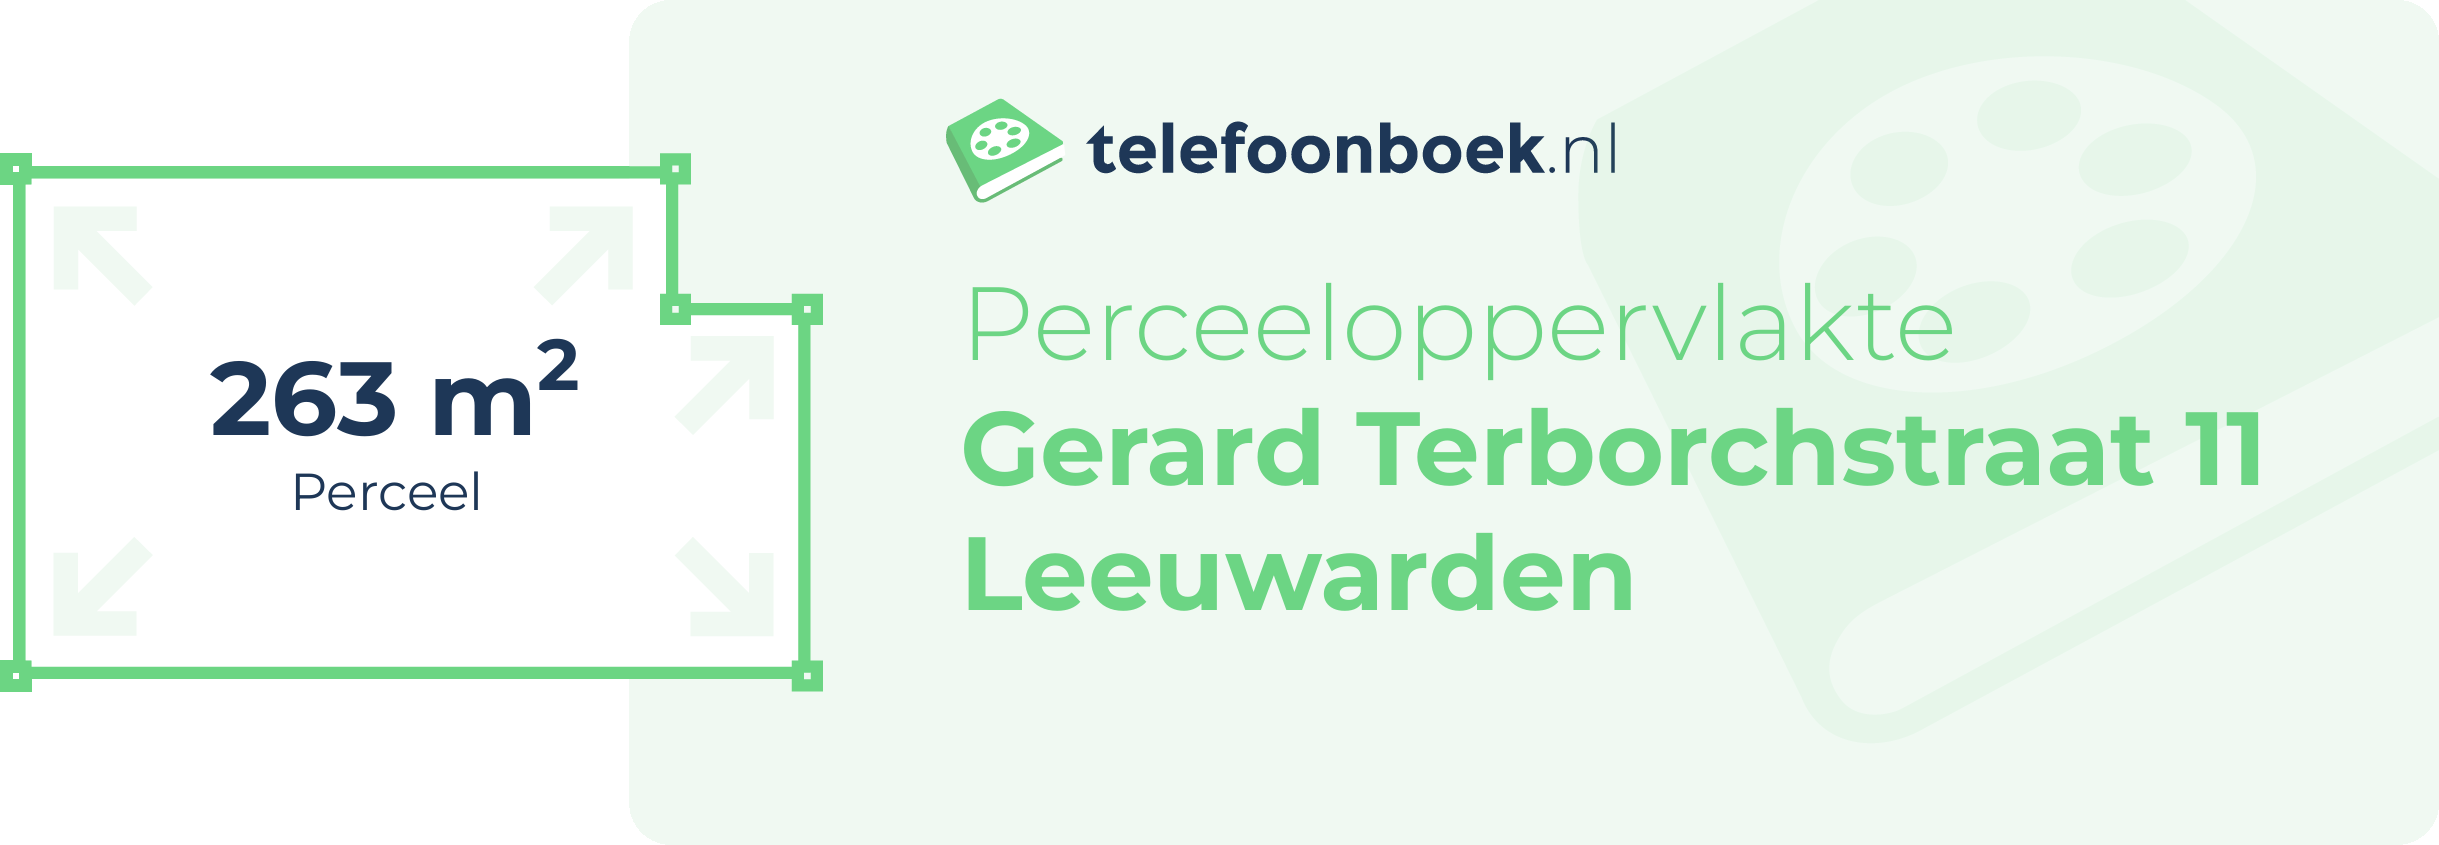 Perceeloppervlakte Gerard Terborchstraat 11 Leeuwarden